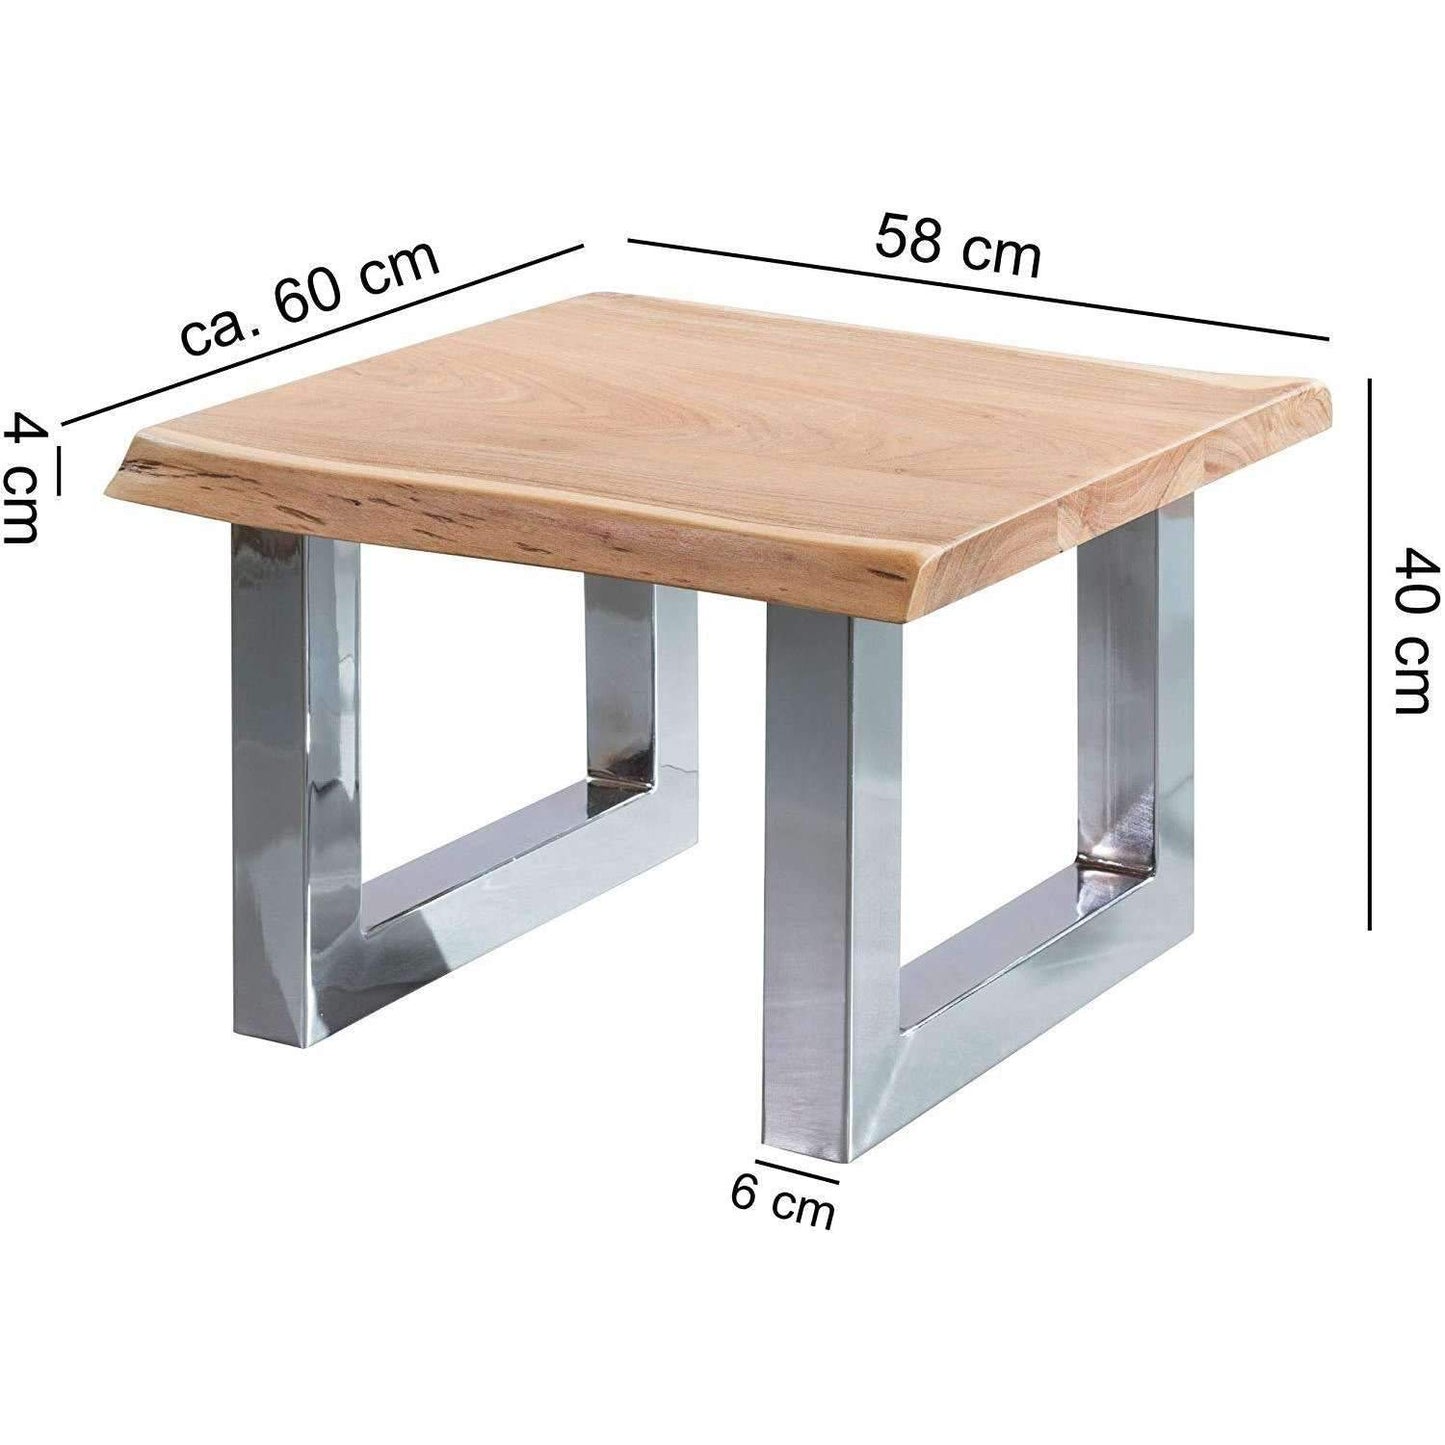 Table basse de Nancy - Table d'appoint - Bois massif - 58 x 40 x 60 cm